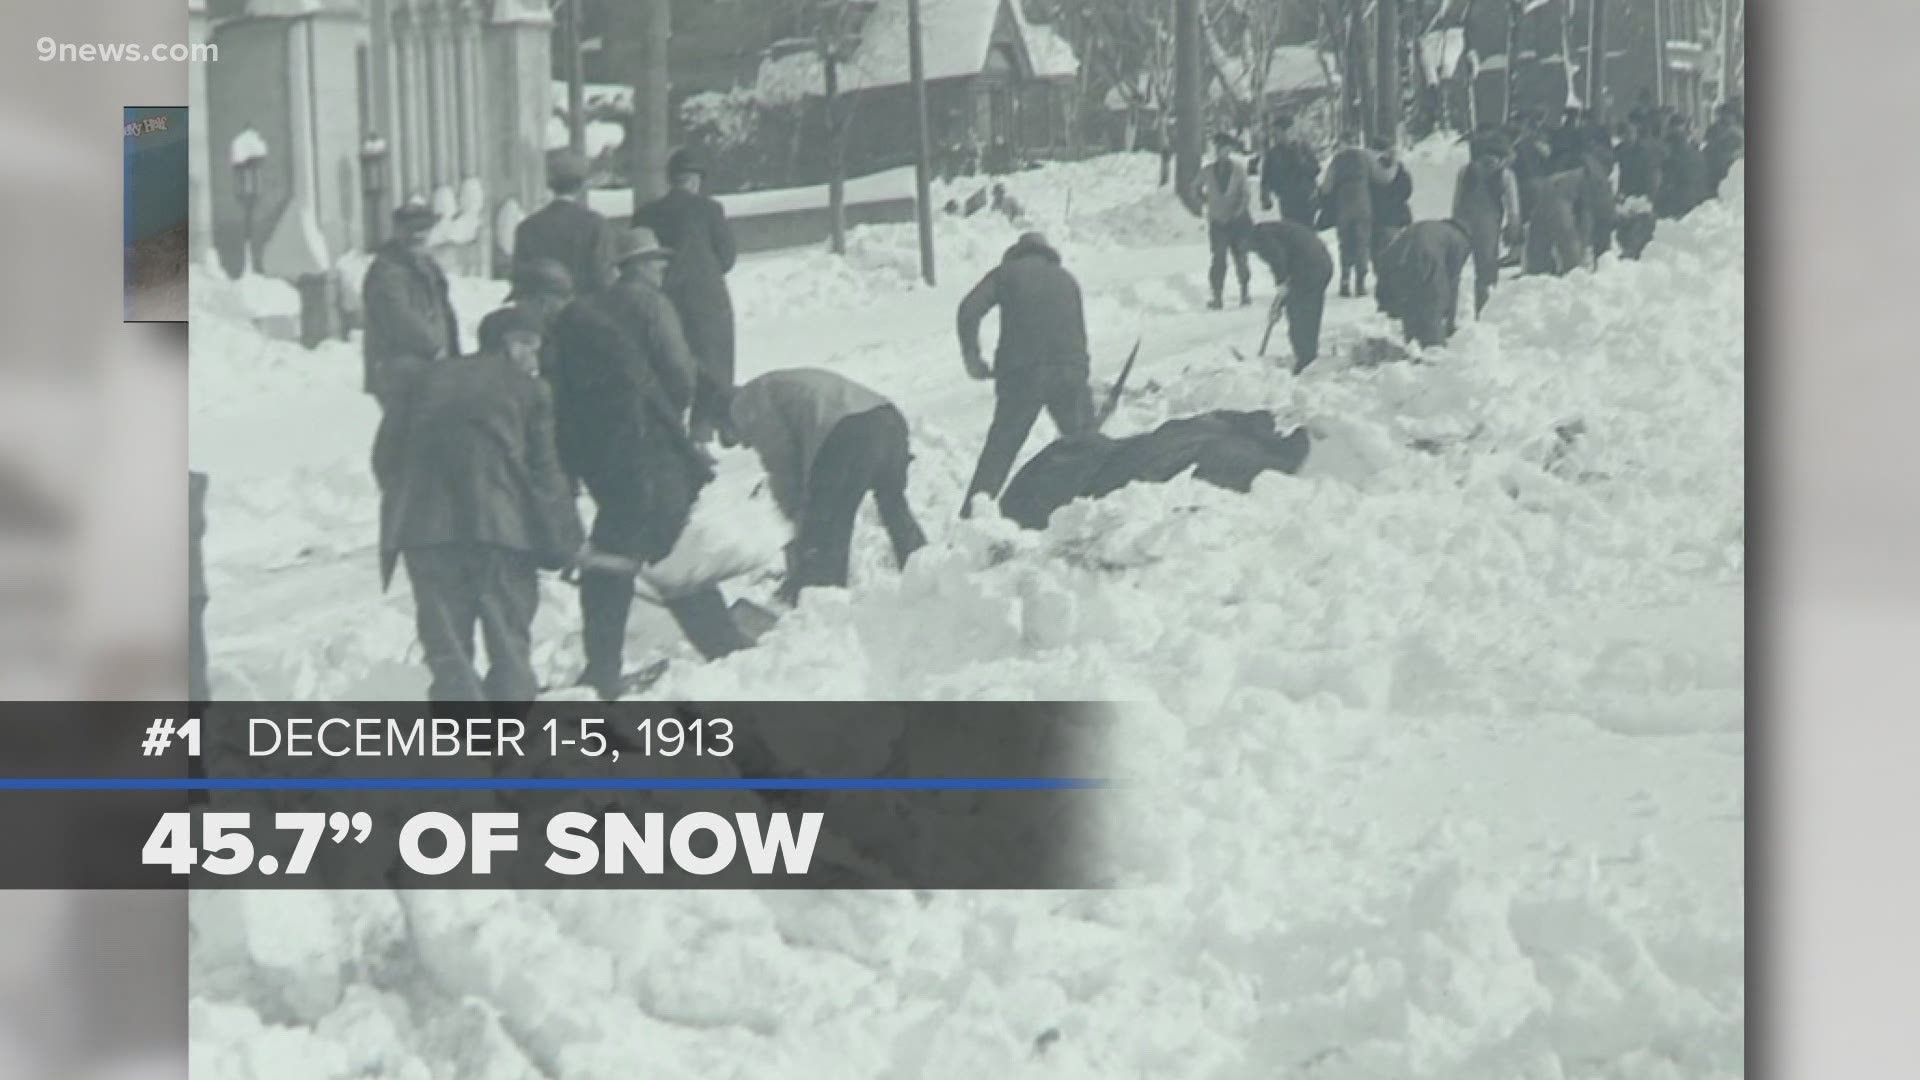 Colorado's massive March snow made the record books at No. 4.